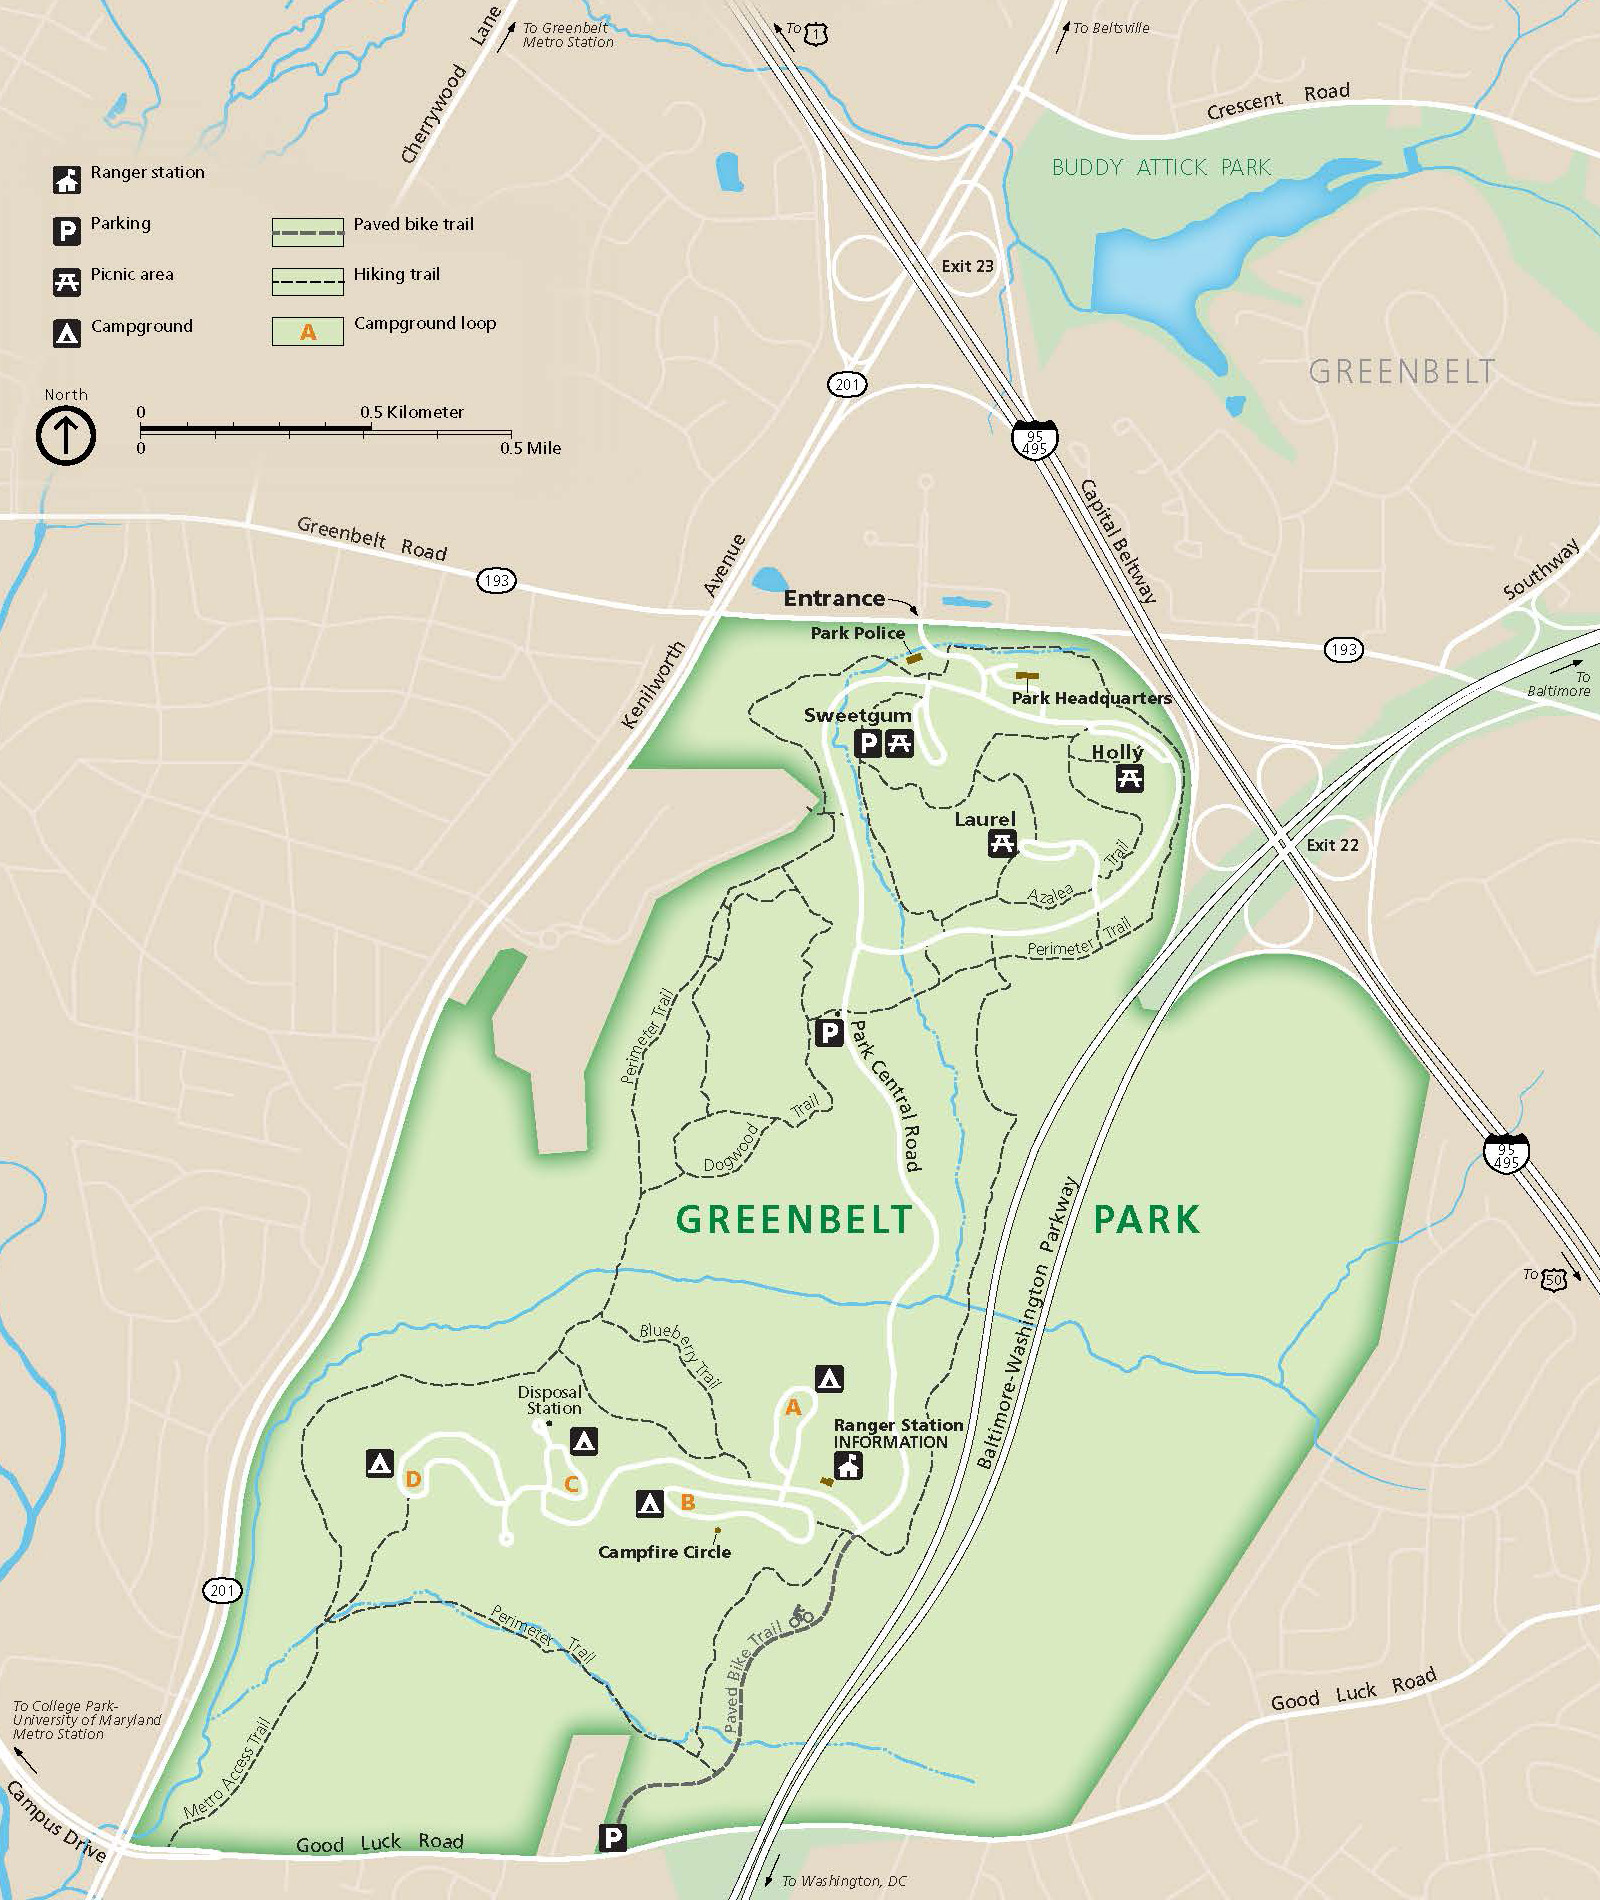 워싱턴 기념비에서 10마일 떨어진 곳에 캠핑하세요! 메릴랜드 주의 국립 그린벨트 공원(Greenbelt Park)